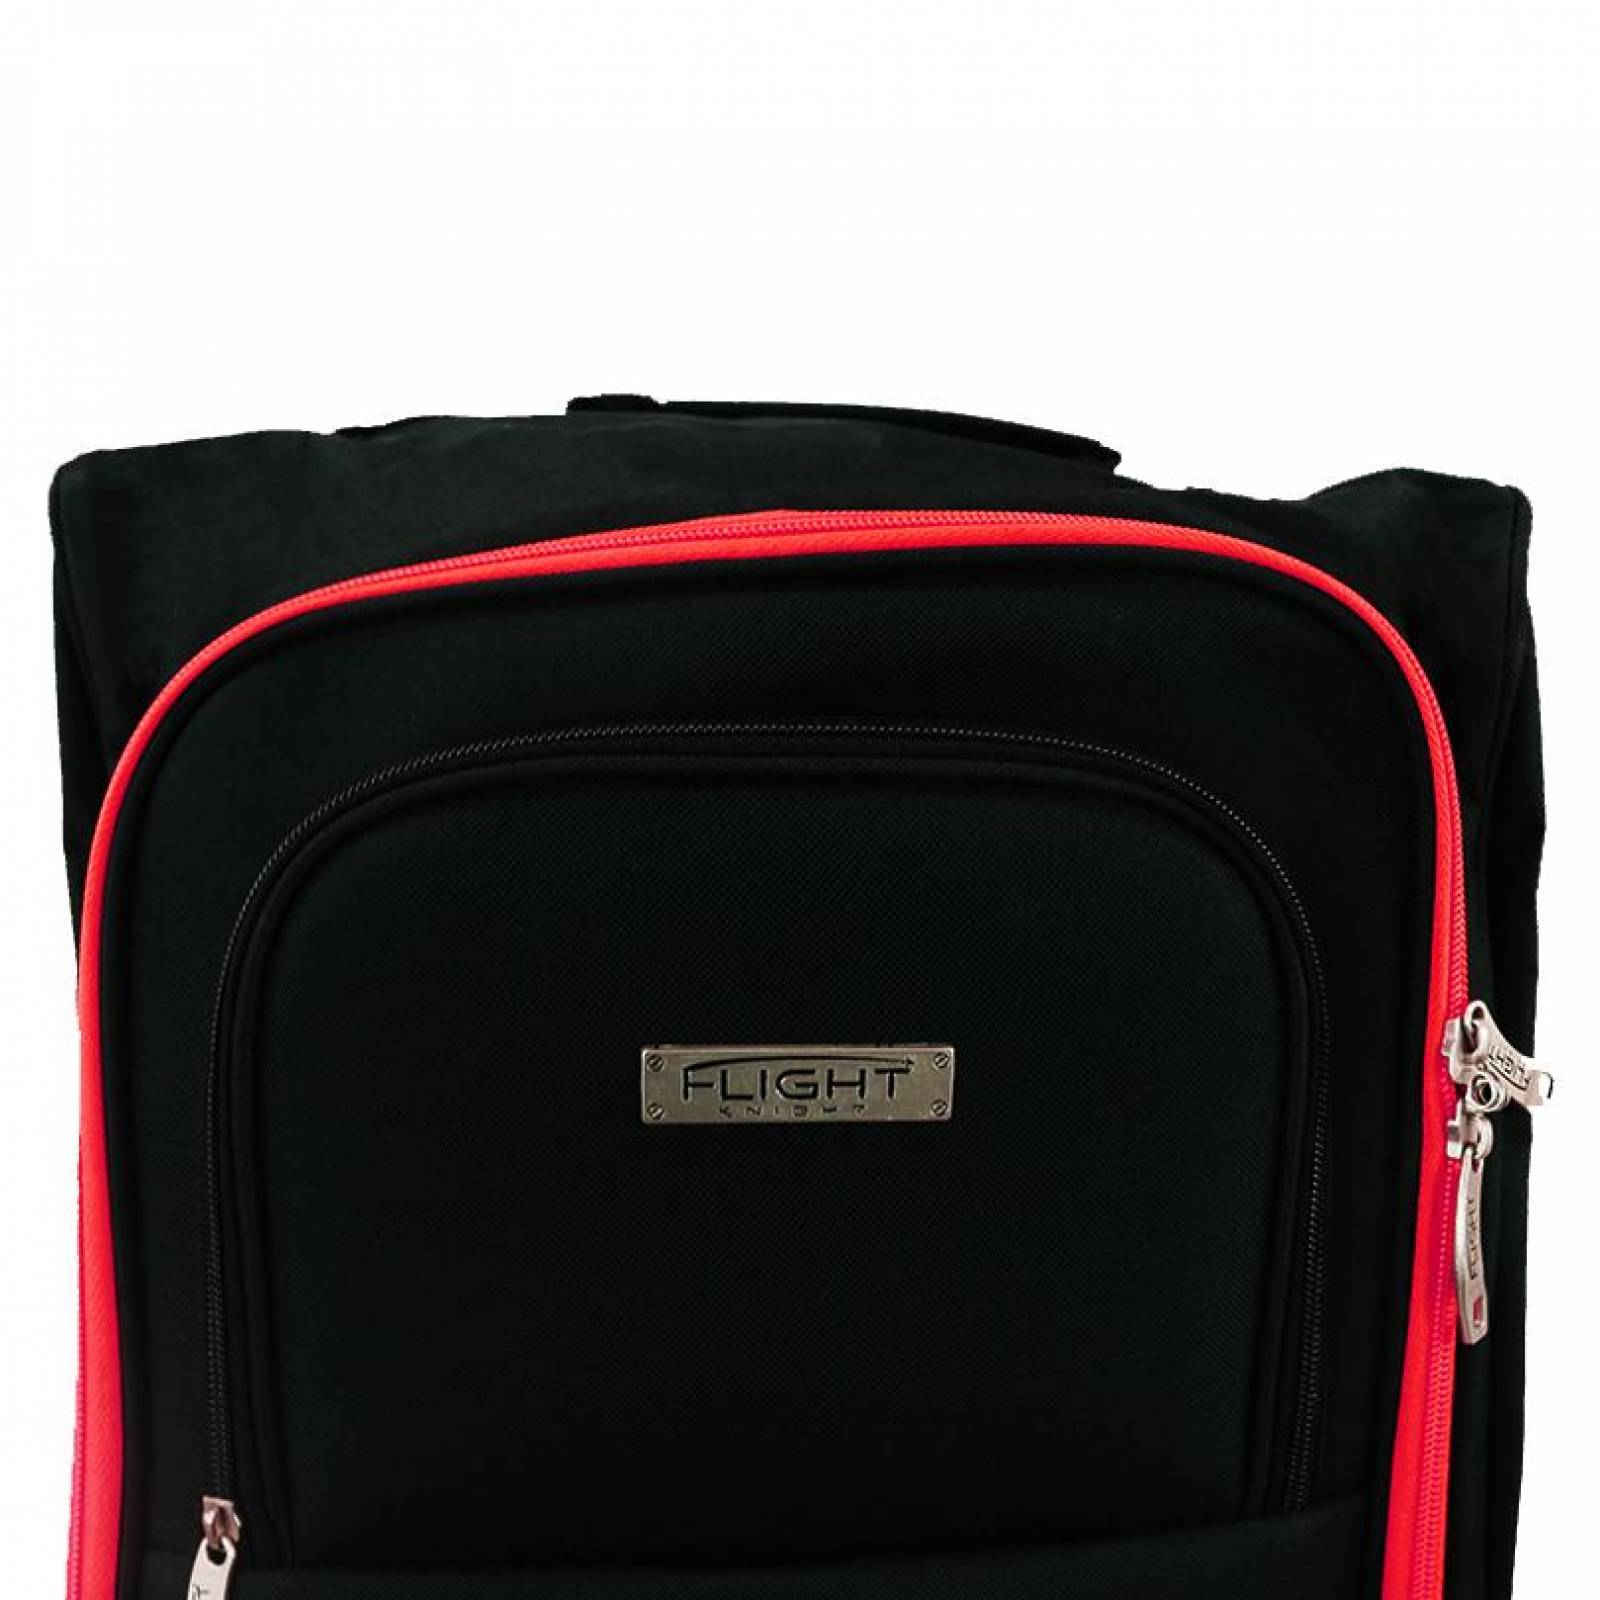 Maleta 21 Pulg. Backpack Duffle deportiva Flight Knight D12(L) Negro/Rojo unitalla